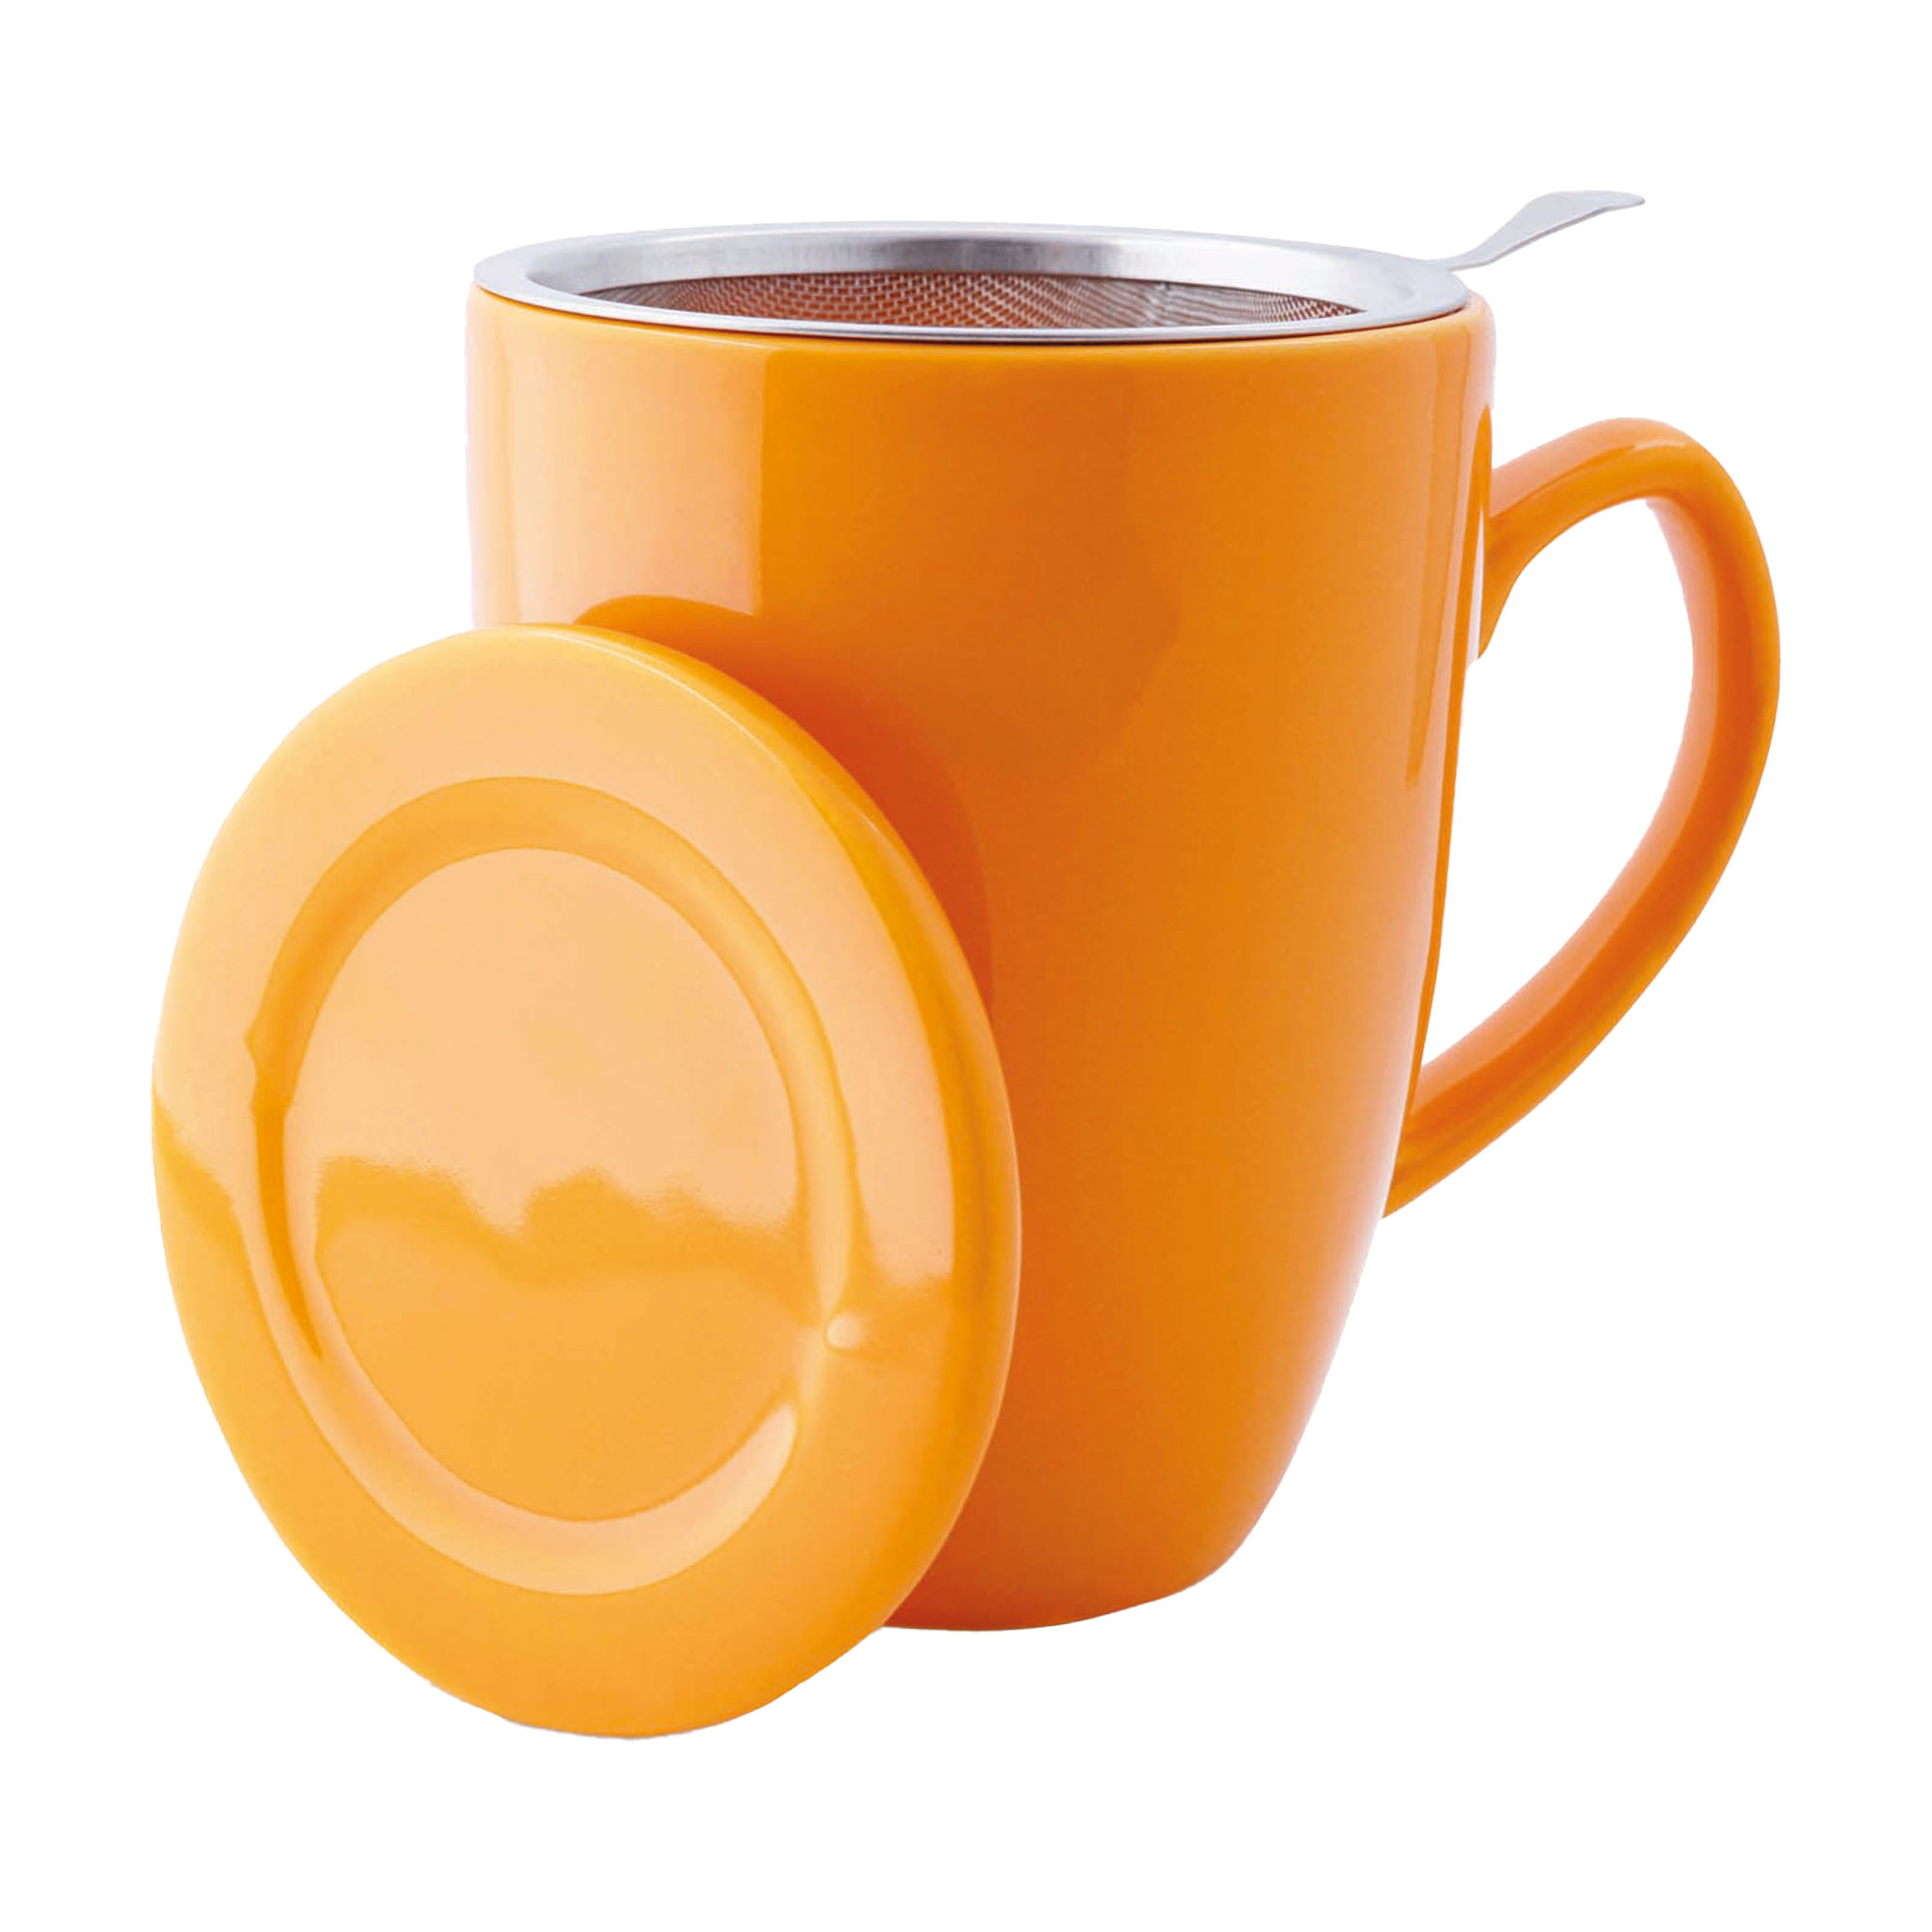 Teetasse mit Siebeinsatz und Deckel. Farbe: orange. Mit 0,35 Liter Fassungsvermögen.